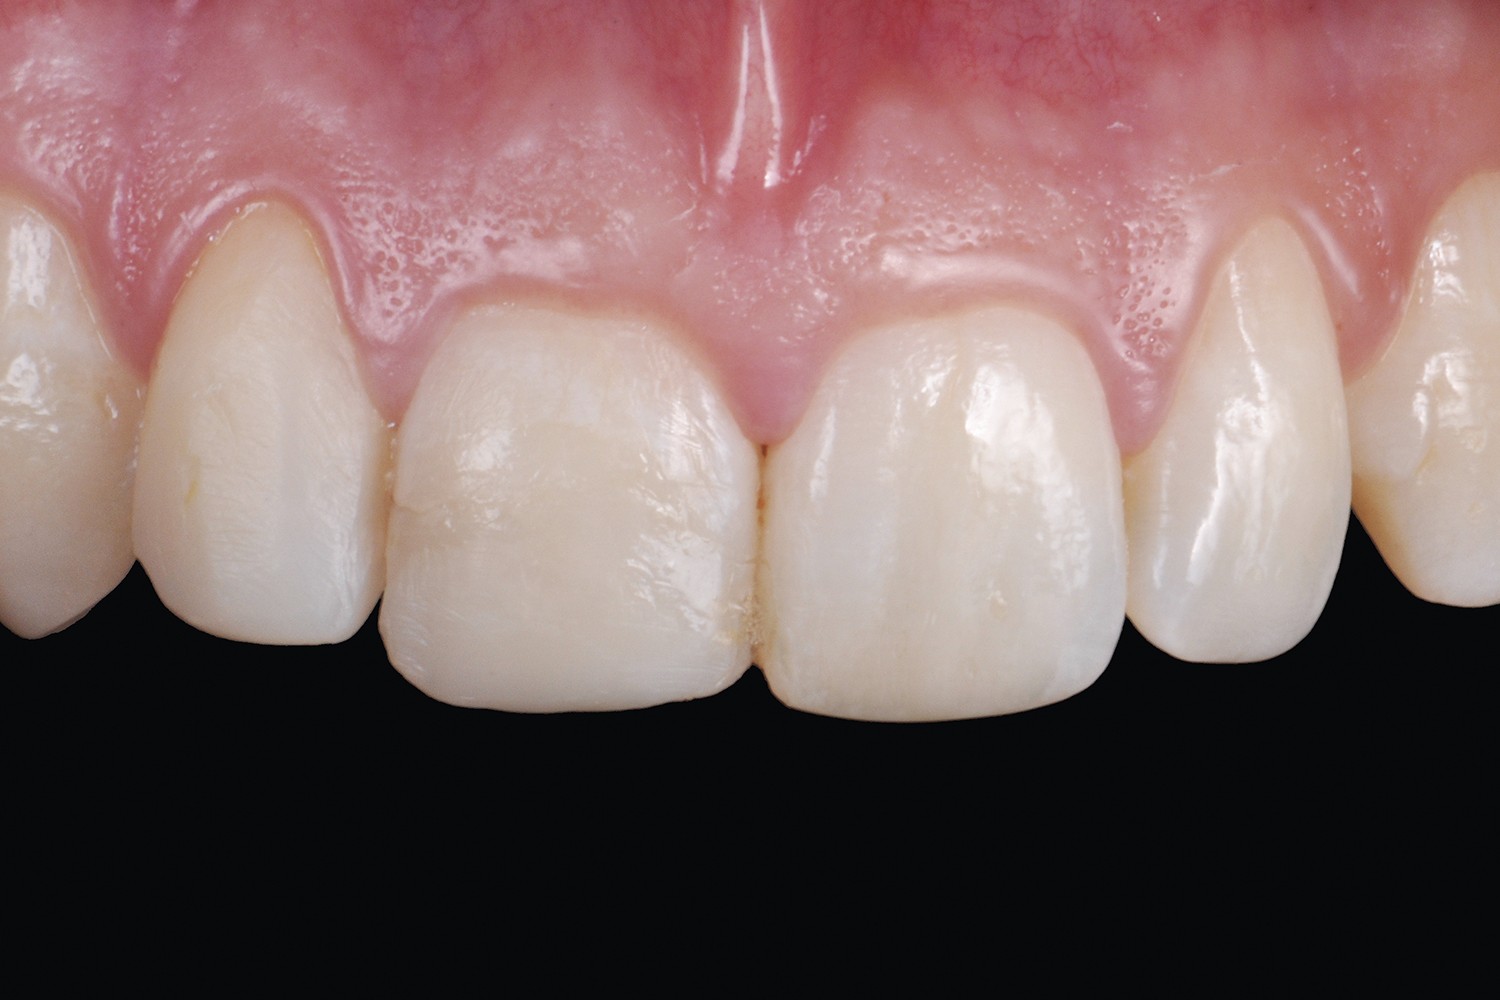 Lesiones dentales traumáticas anteriores: tratamiento ultraconservador